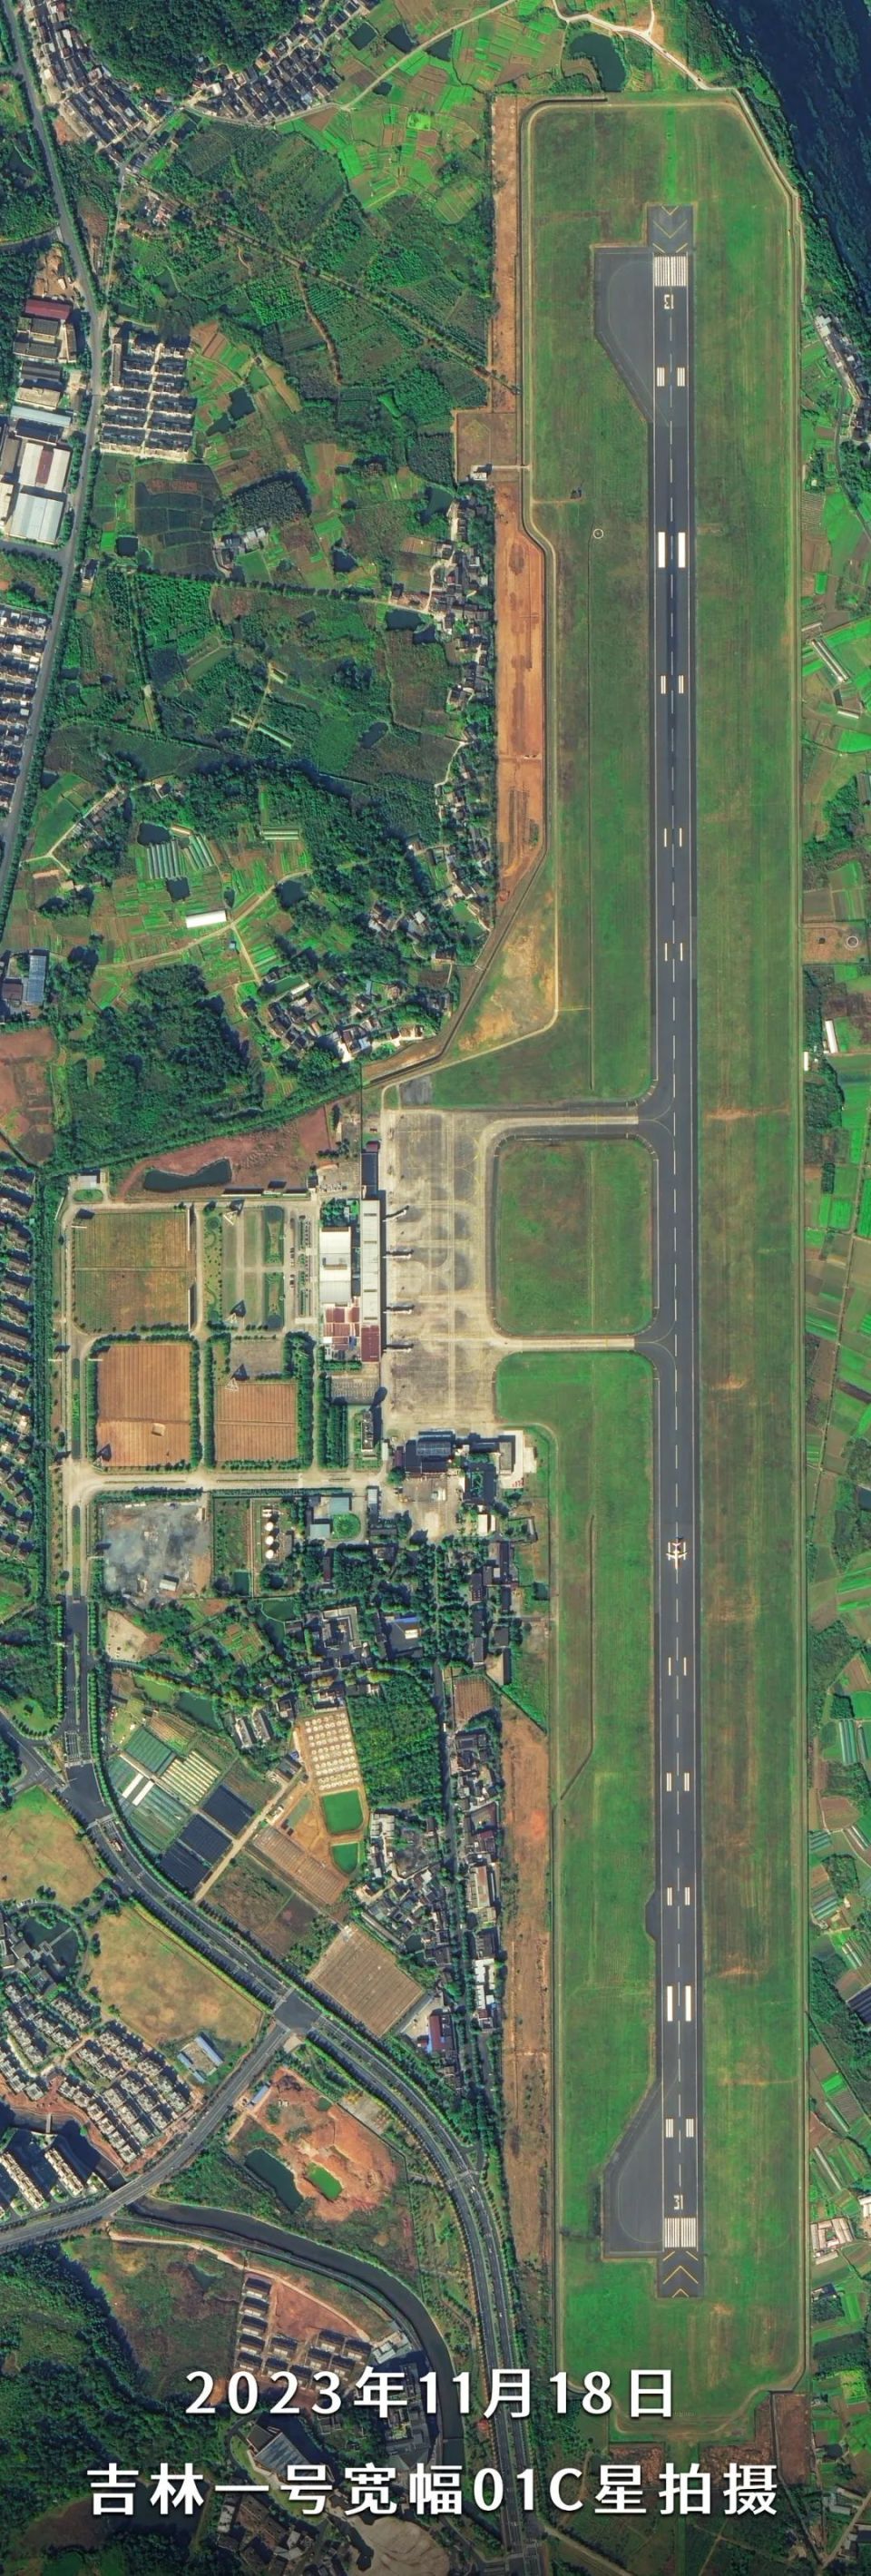 黄山新机场选址确认图片